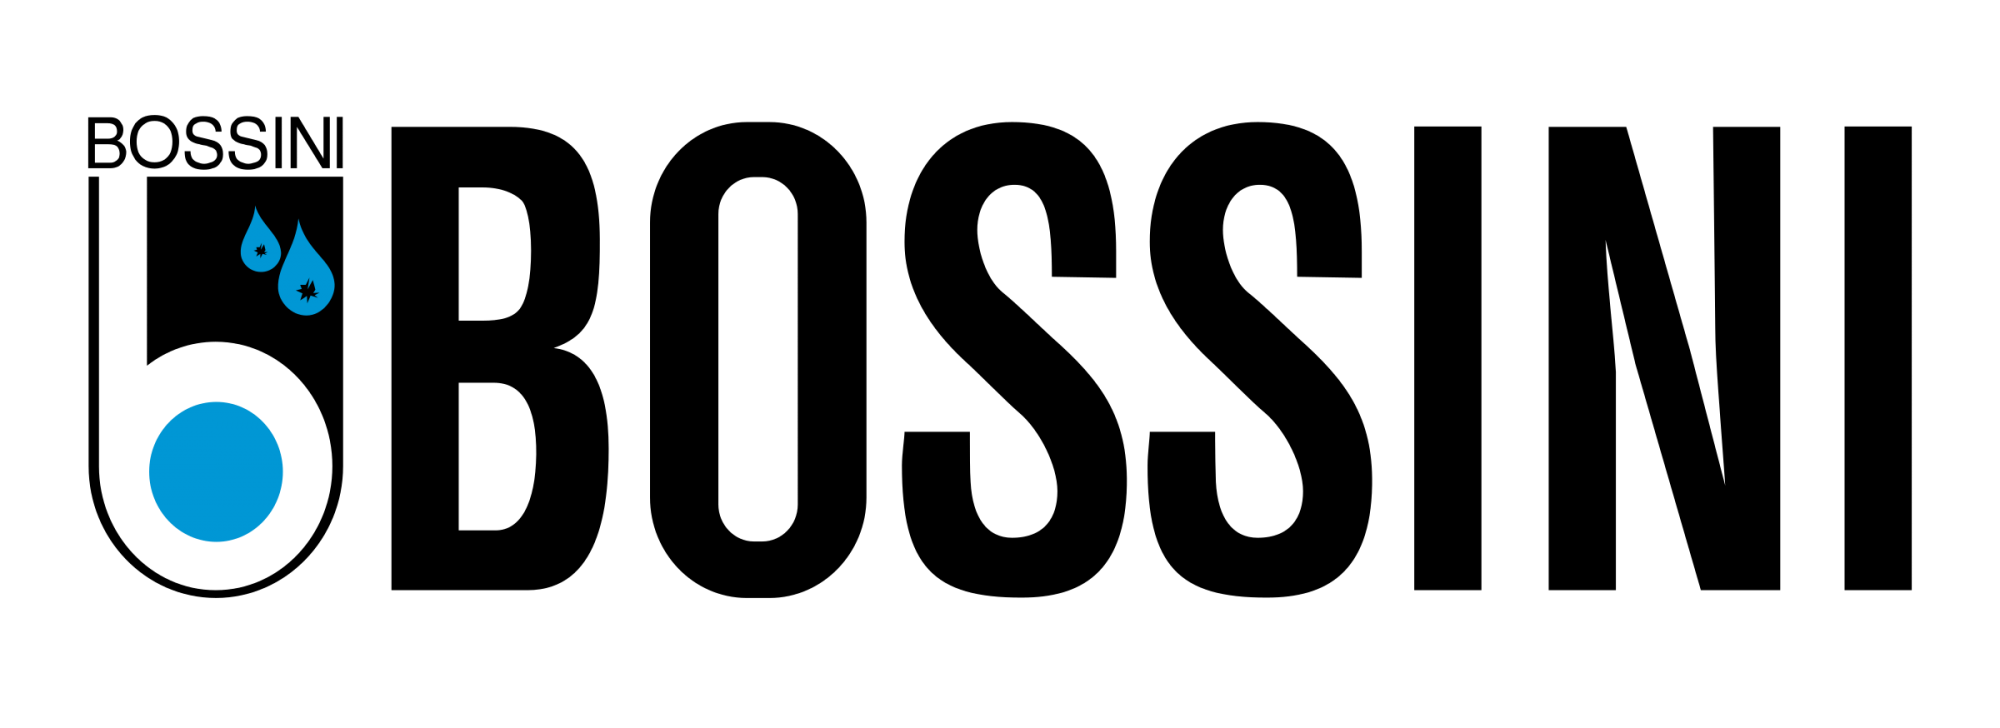 Логотип бренда Bossini